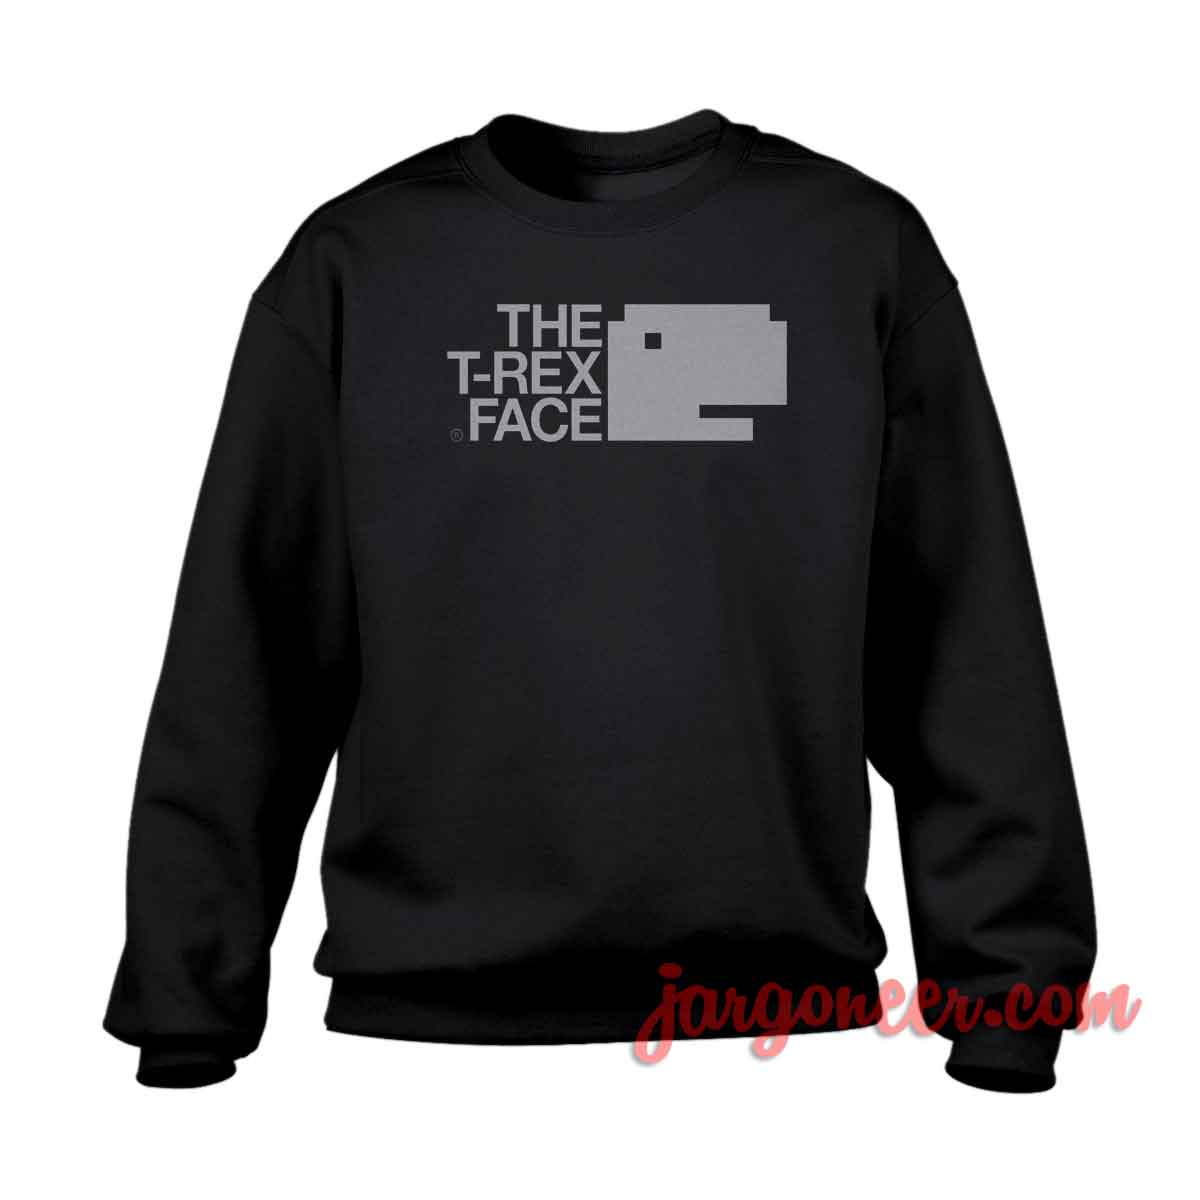 T rex Face - Shop Unique Graphic Cool Shirt Designs